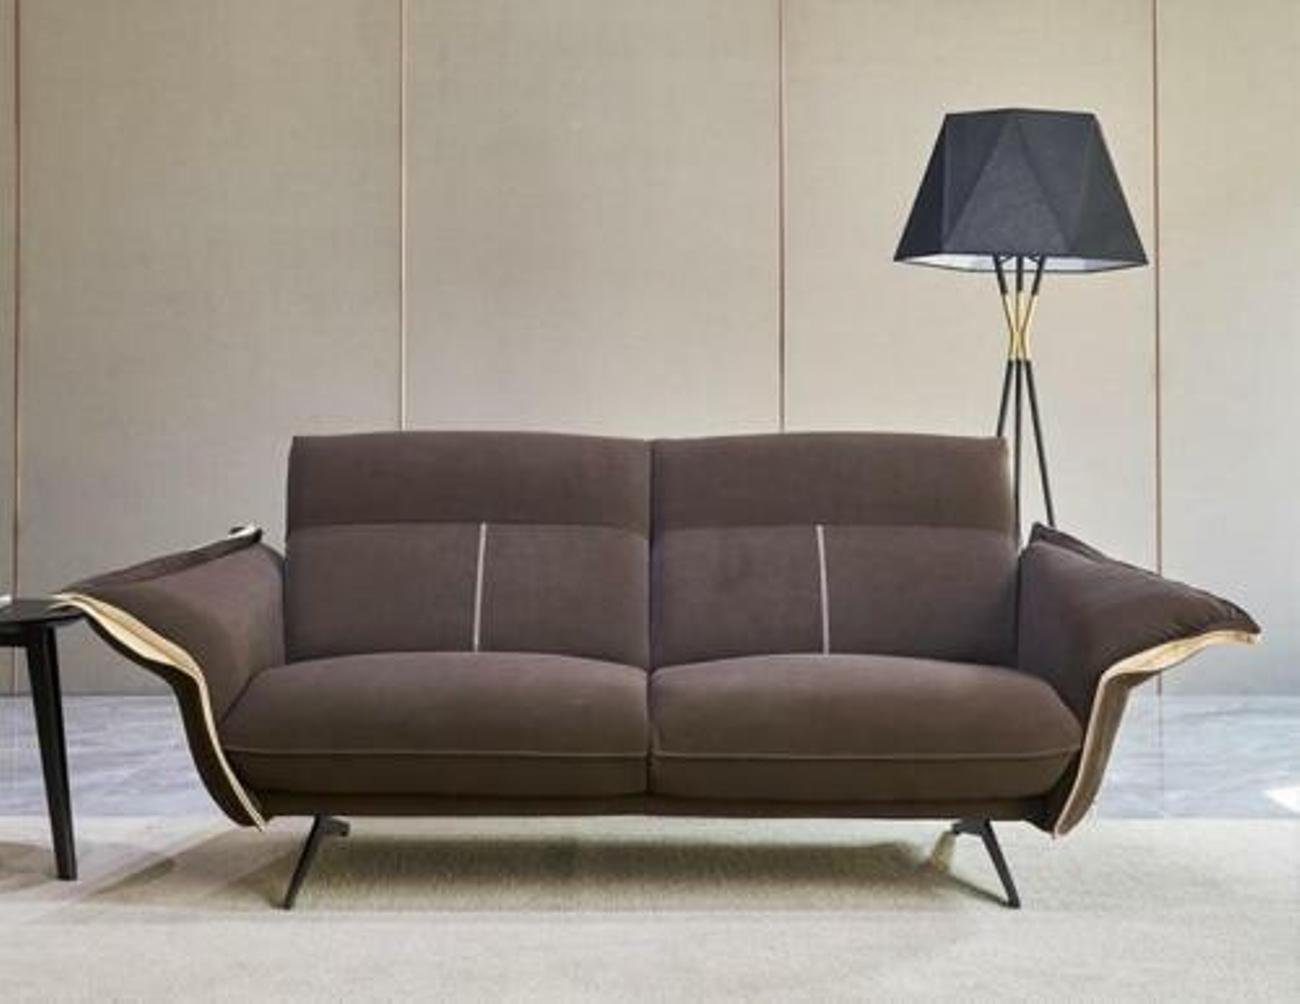 Grün Couch Ecksofa, Design Ecksofa Polster Textil Wohnzimmer Möbel Italienische JVmoebel